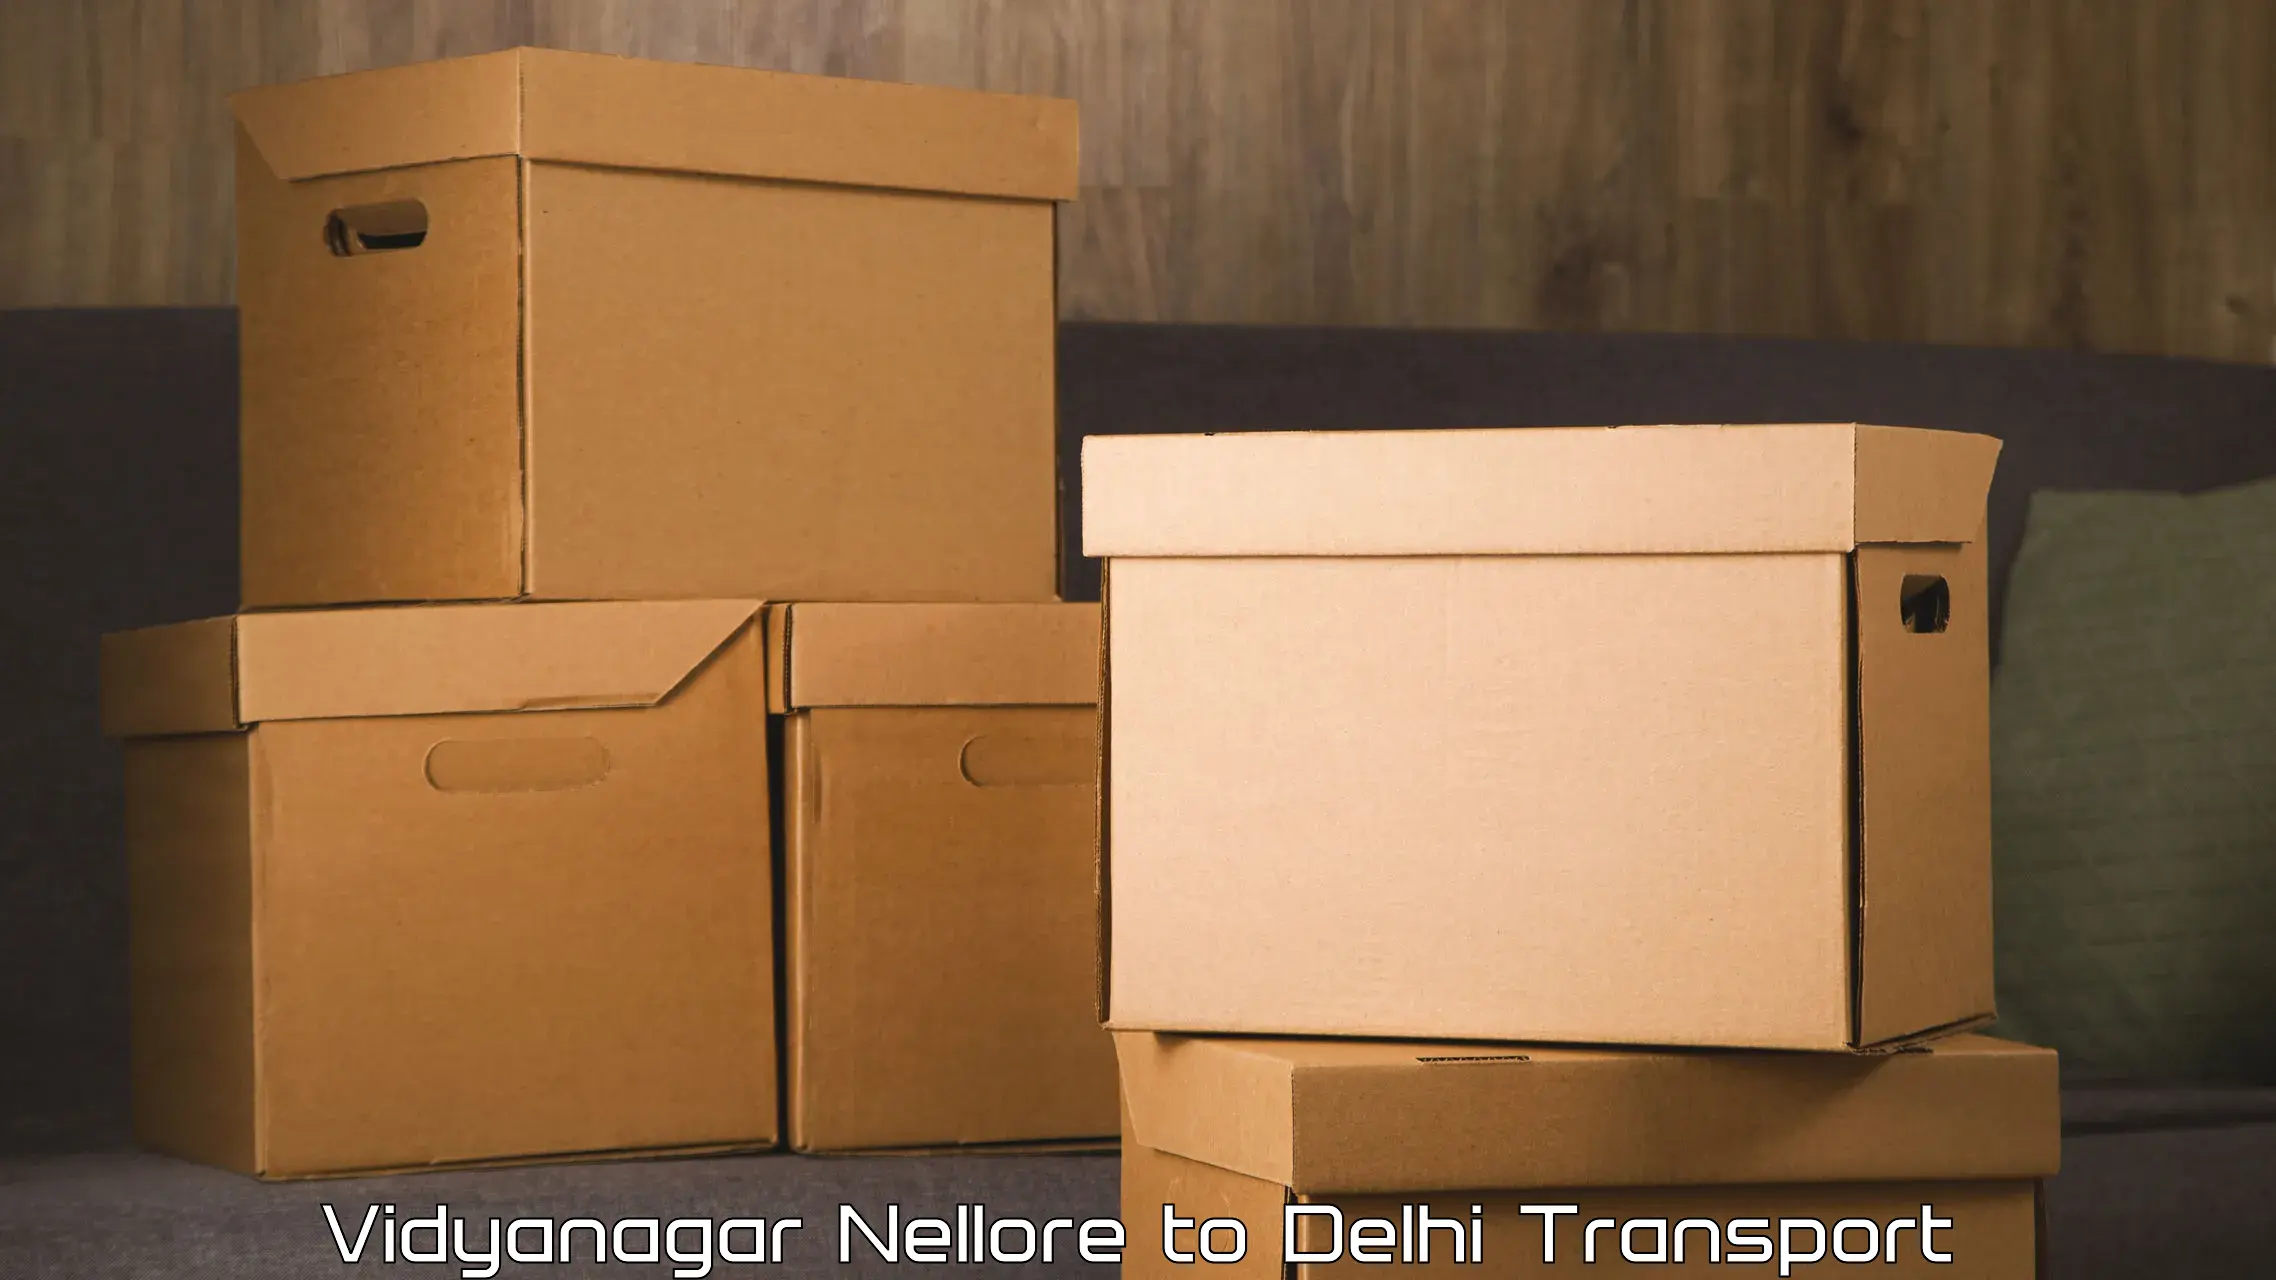 Air freight transport services Vidyanagar Nellore to Delhi